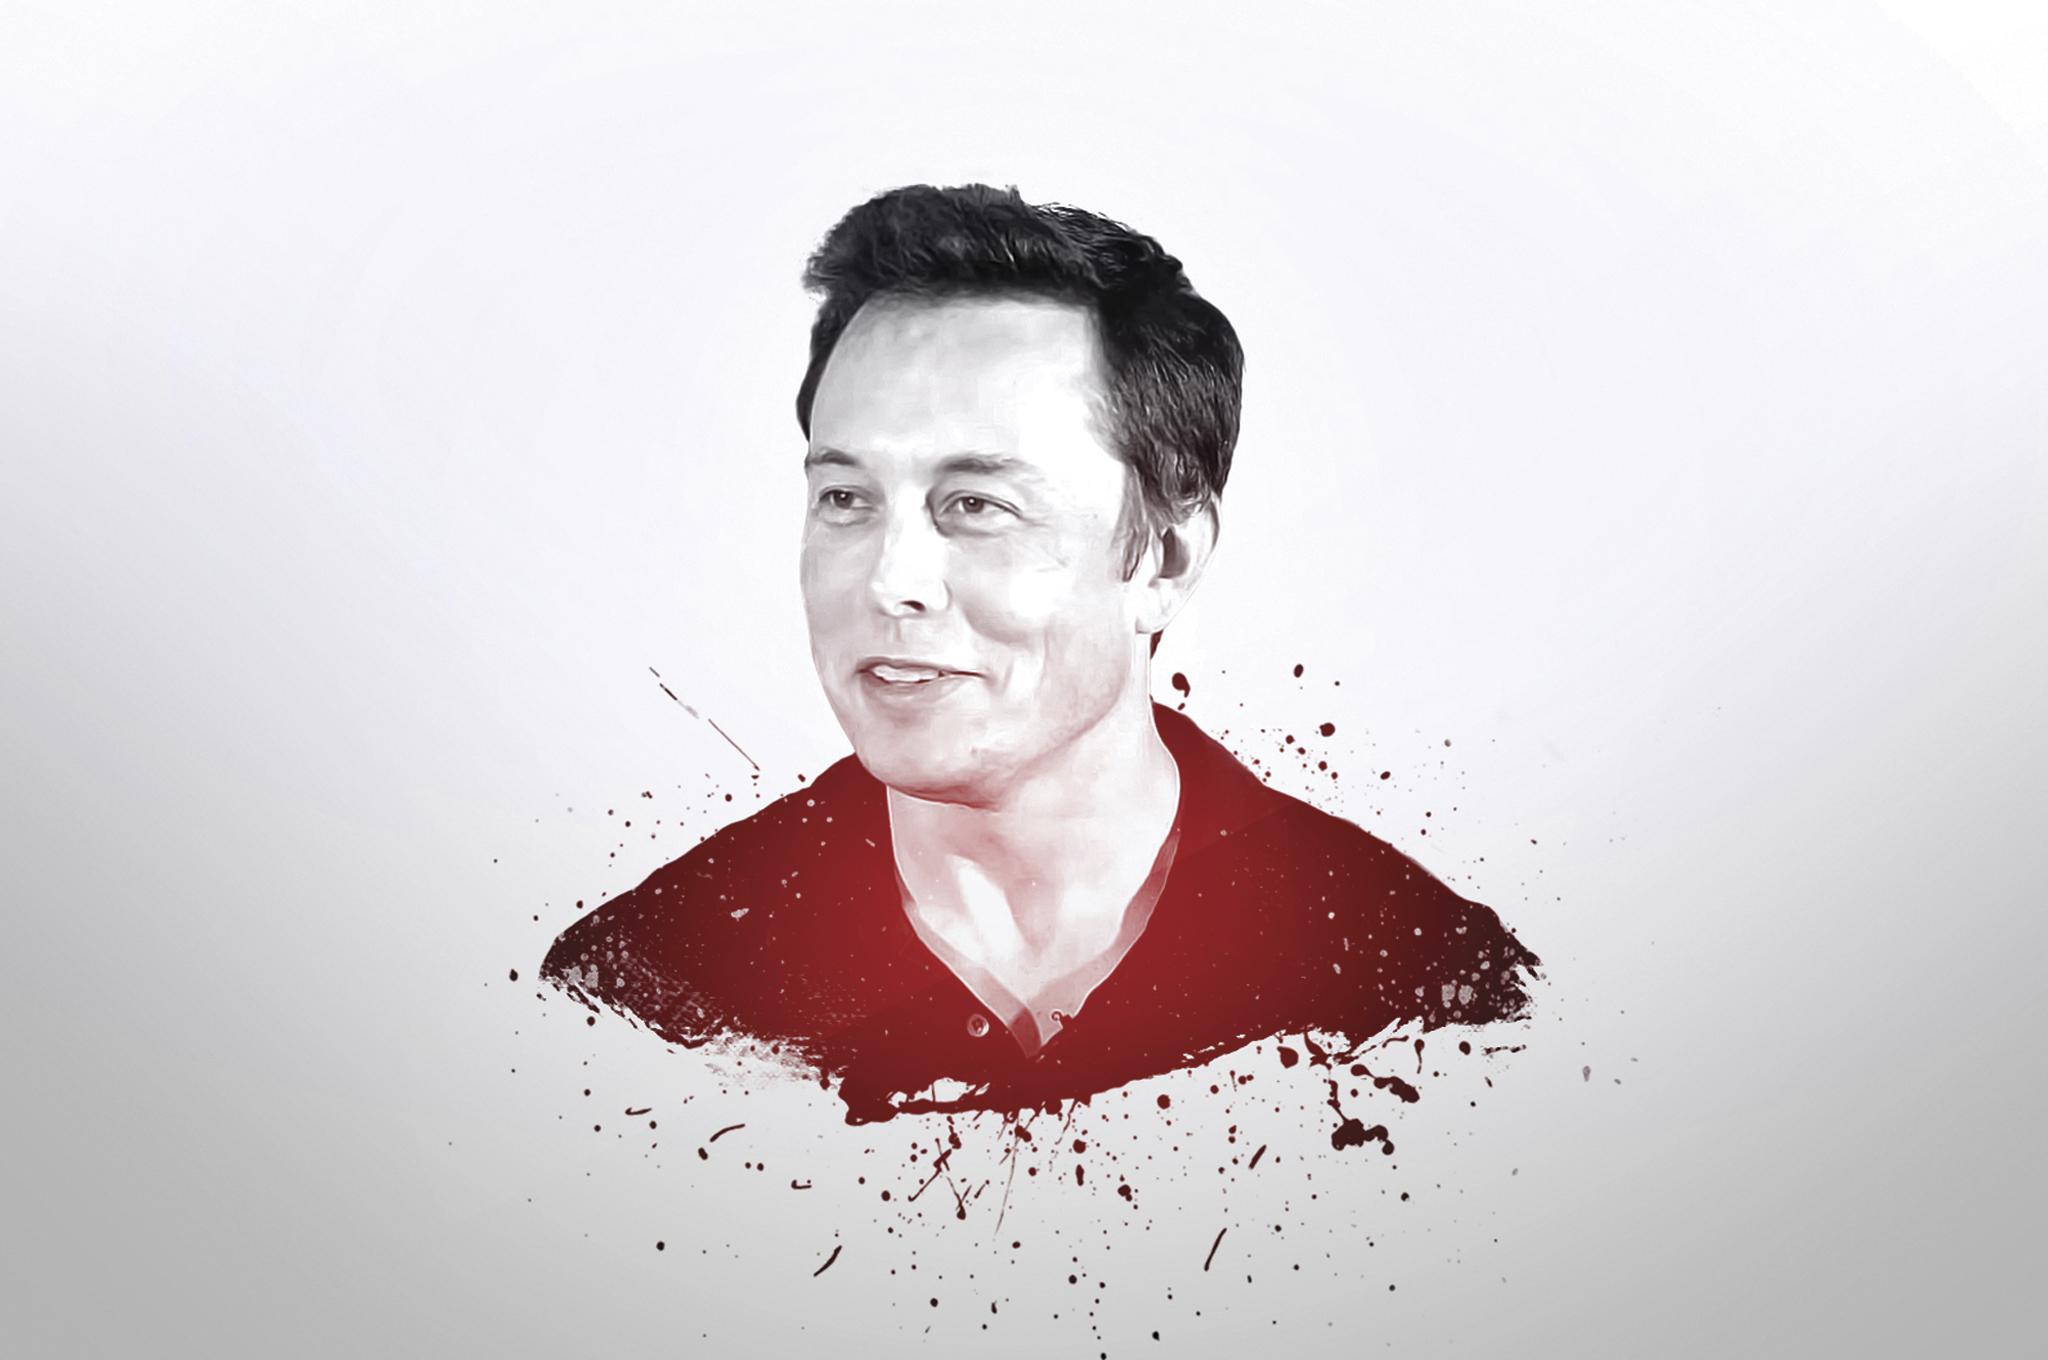 Elon Musk Wallpapers - Top Free Elon Musk Backgrounds - WallpaperAccess